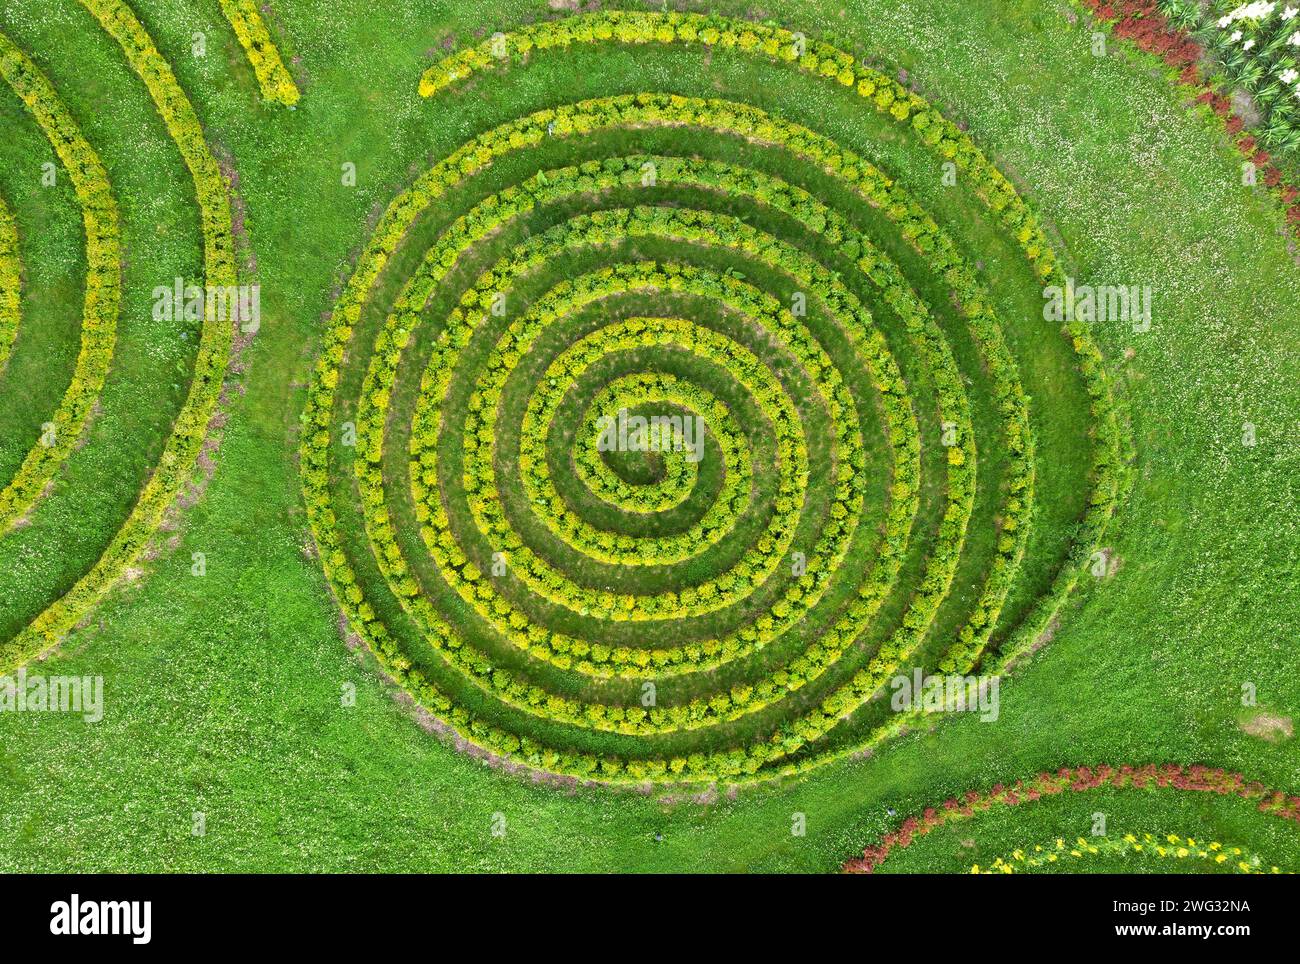 Vue aérienne du beau jardin d'été avec une pelouse verte et des buissons en forme de spirale. Aménagement paysager Banque D'Images